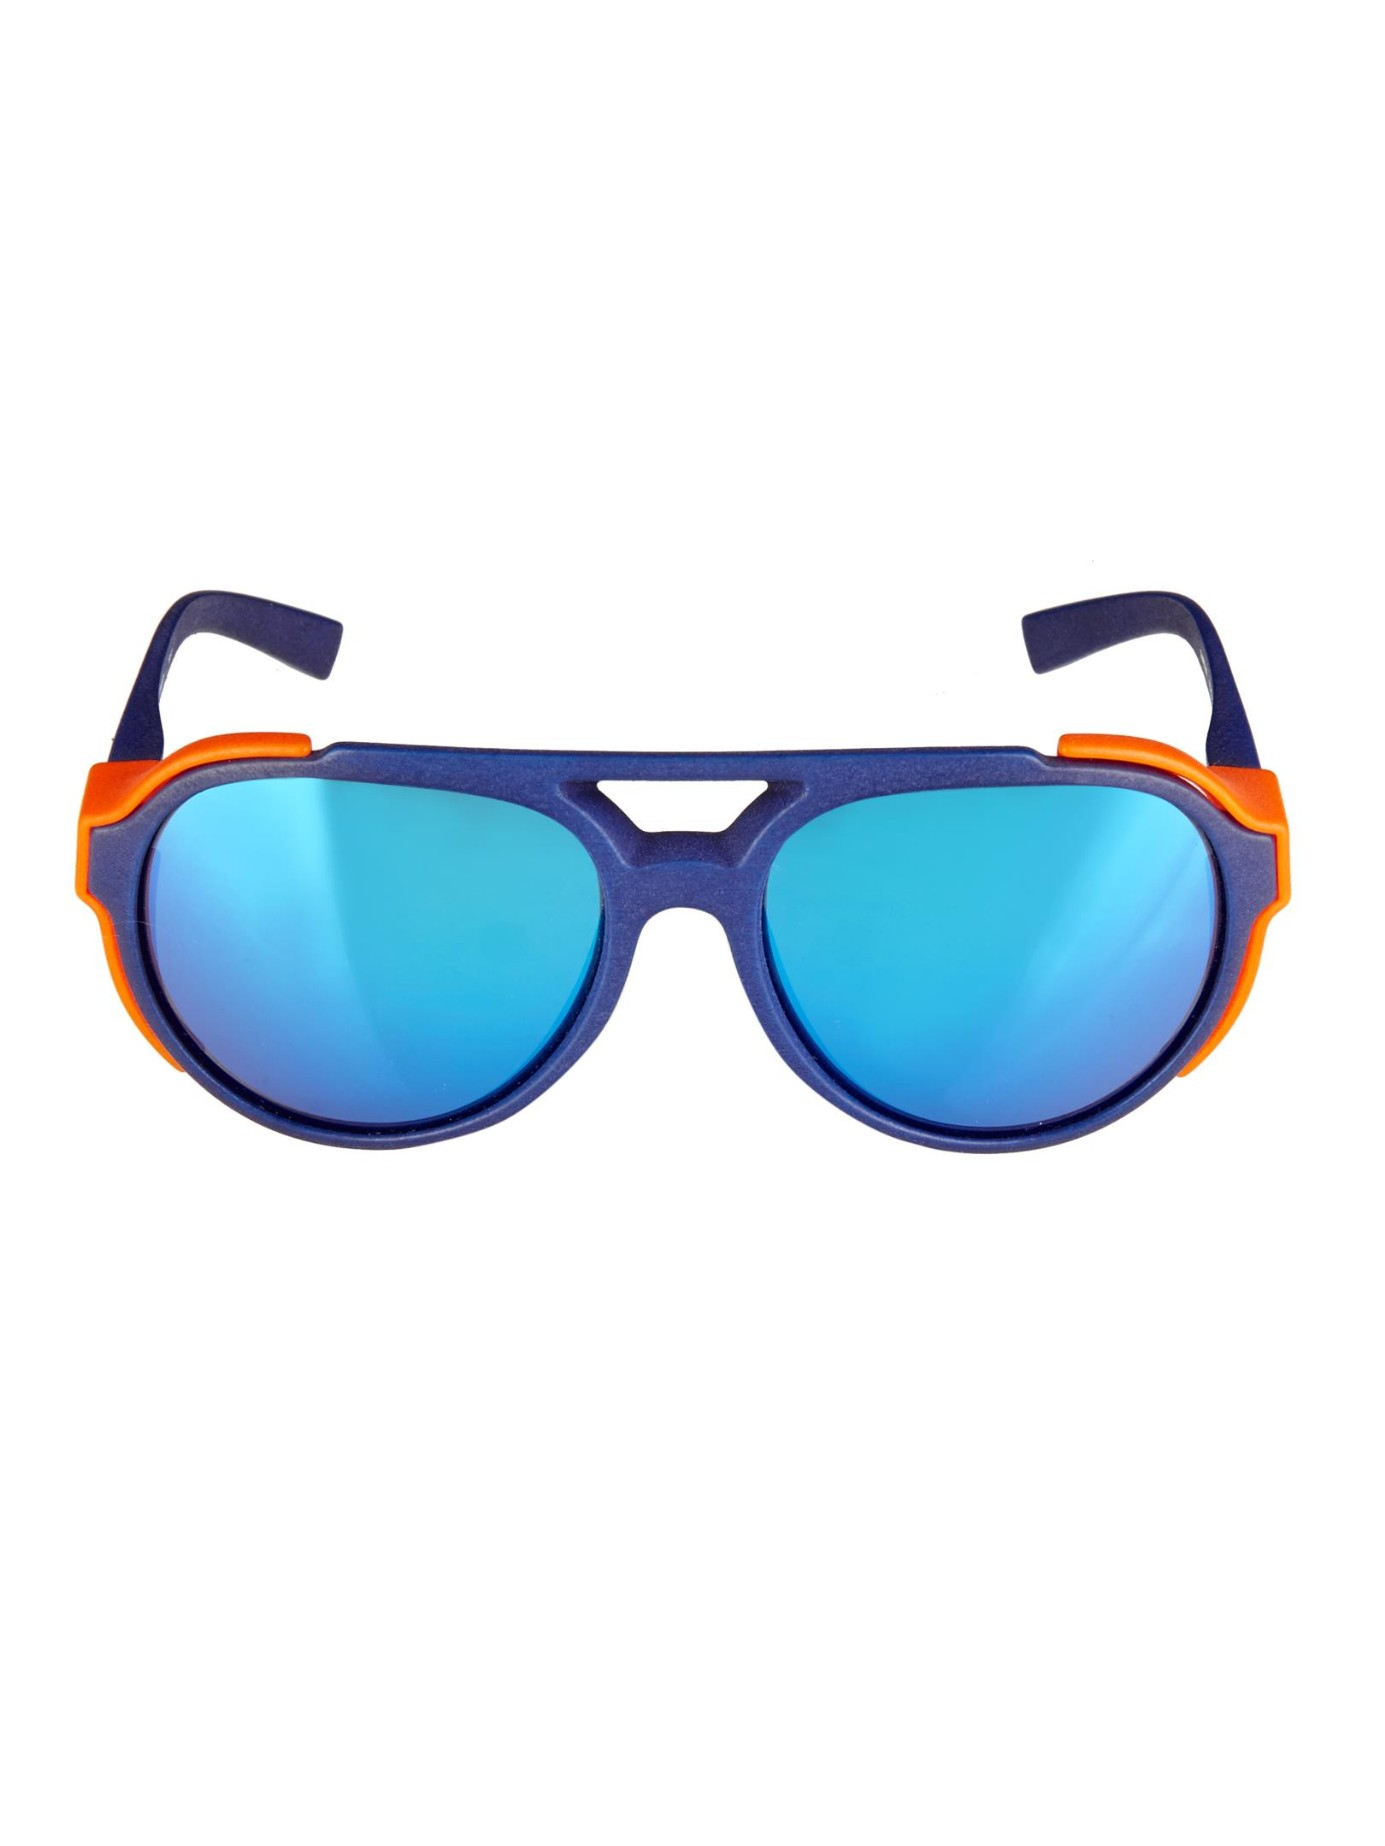 Mens Blue Lens Aviator Sunglasses | www.tapdance.org